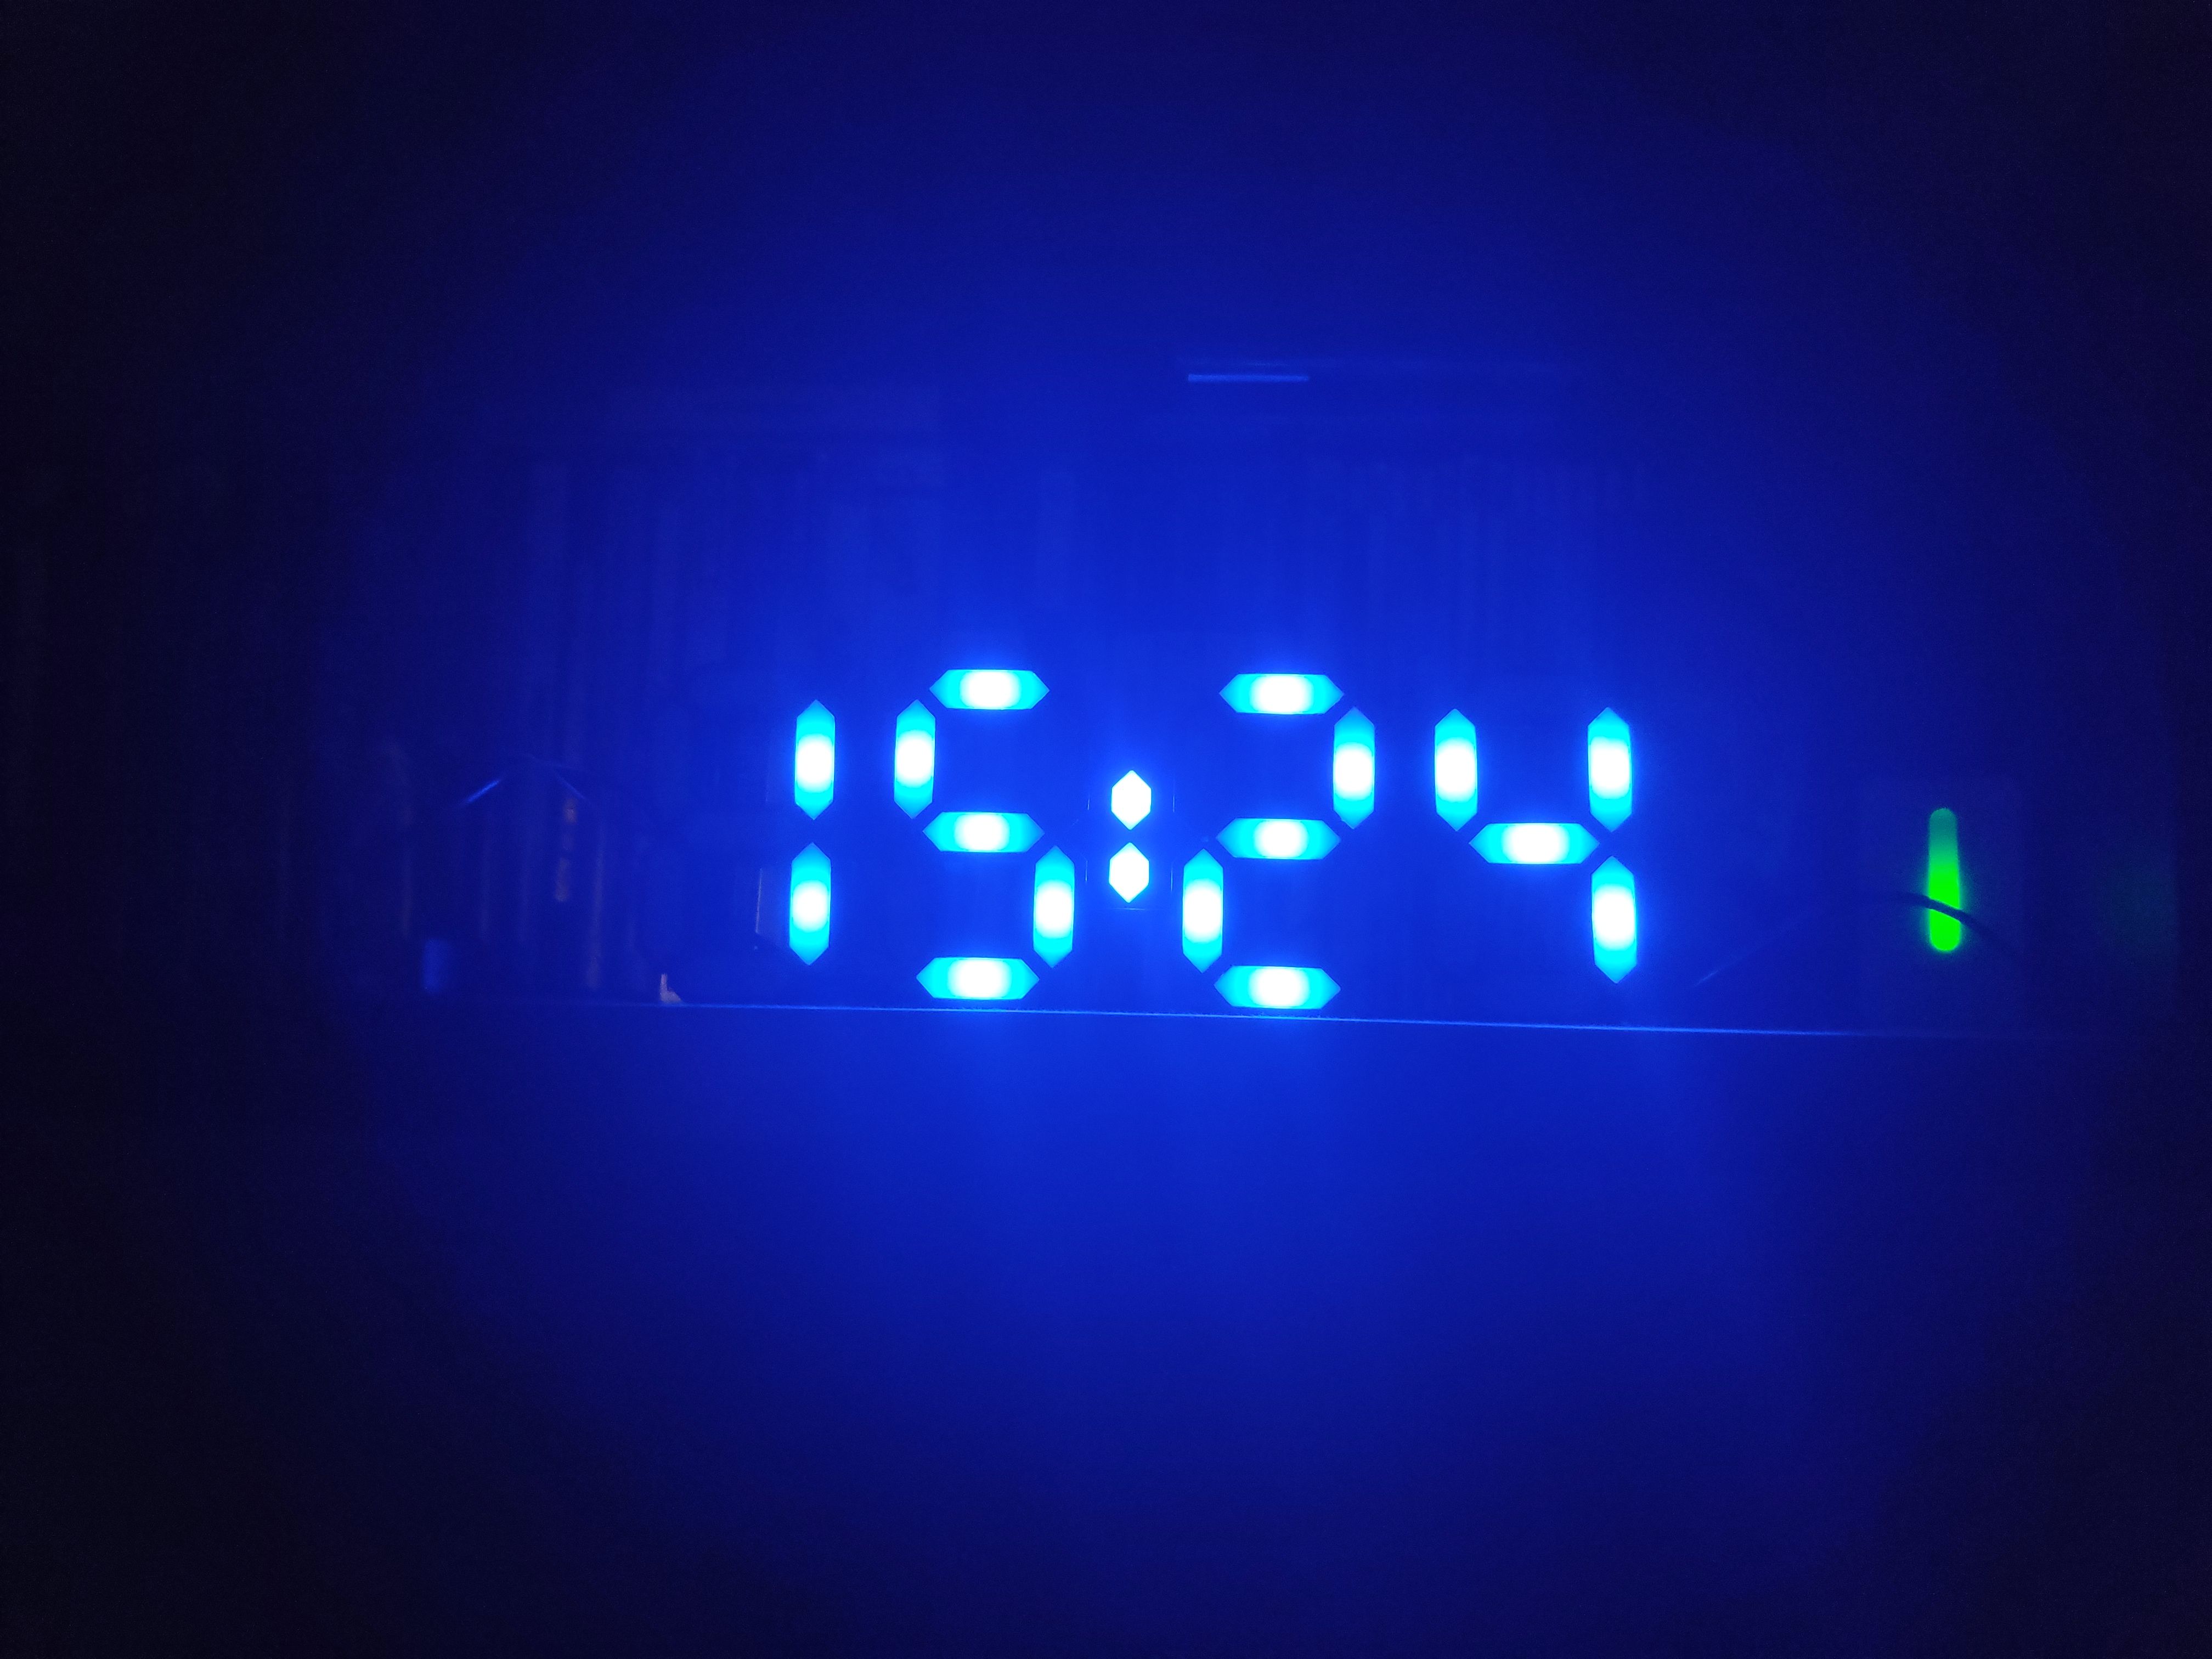 7 Segments Clock Frame for WS2812B leds and external MCU (Arduino, ESP, etc)